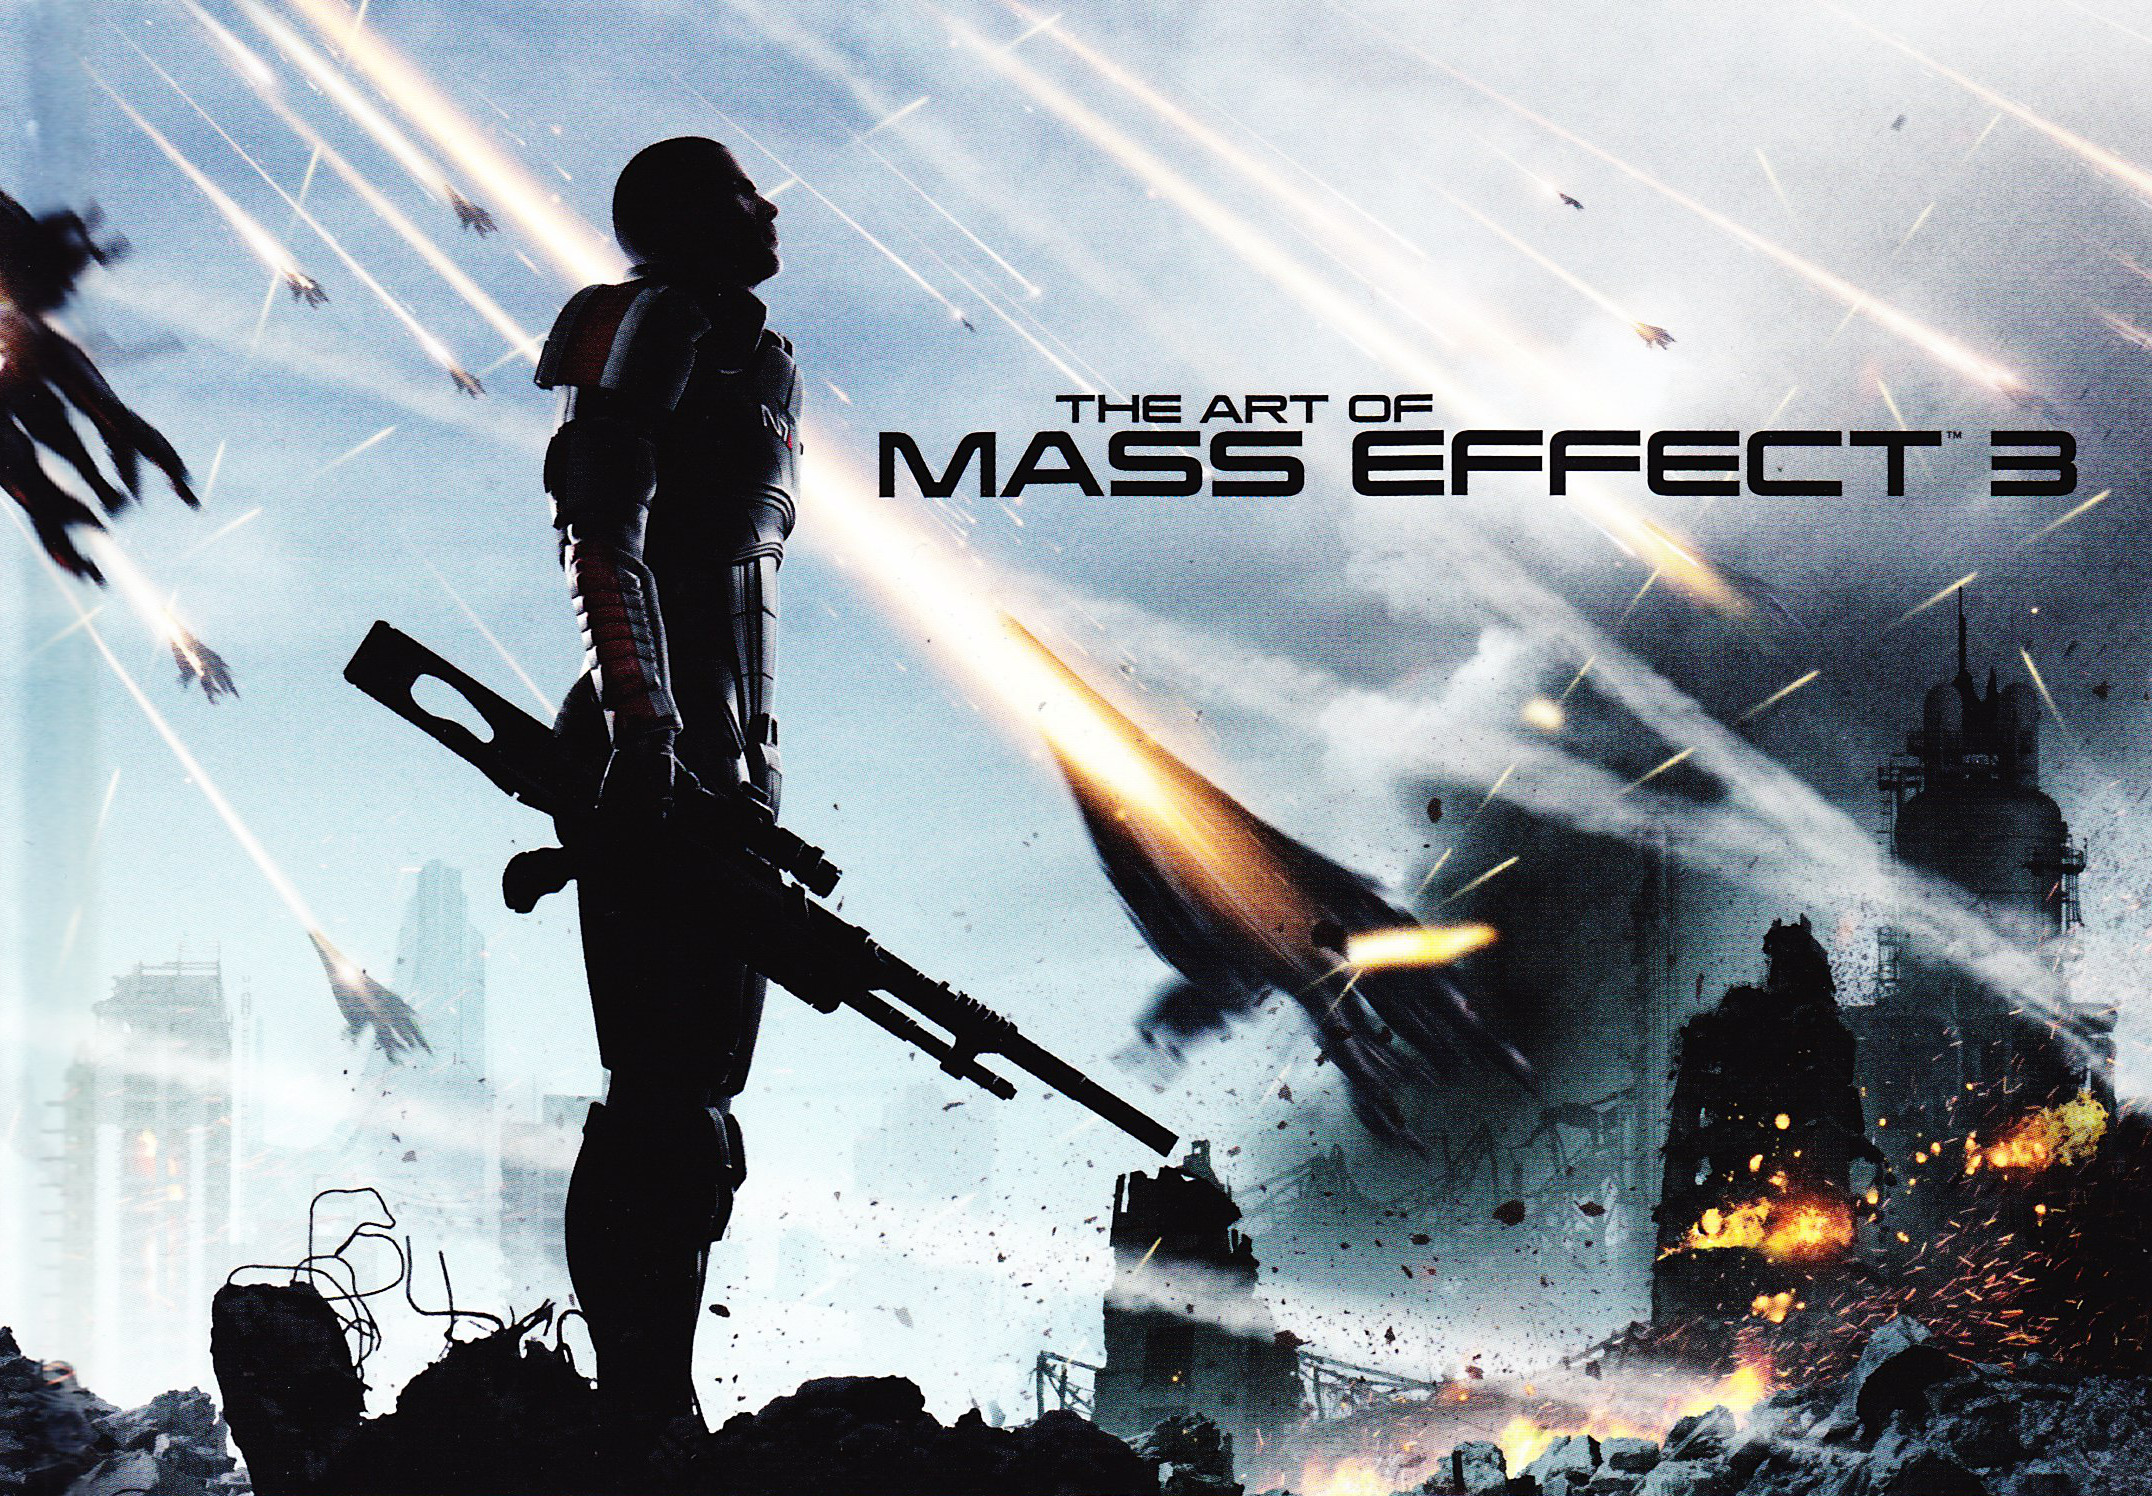 Mass-Effect-3-Art-Book-Cover.jpg